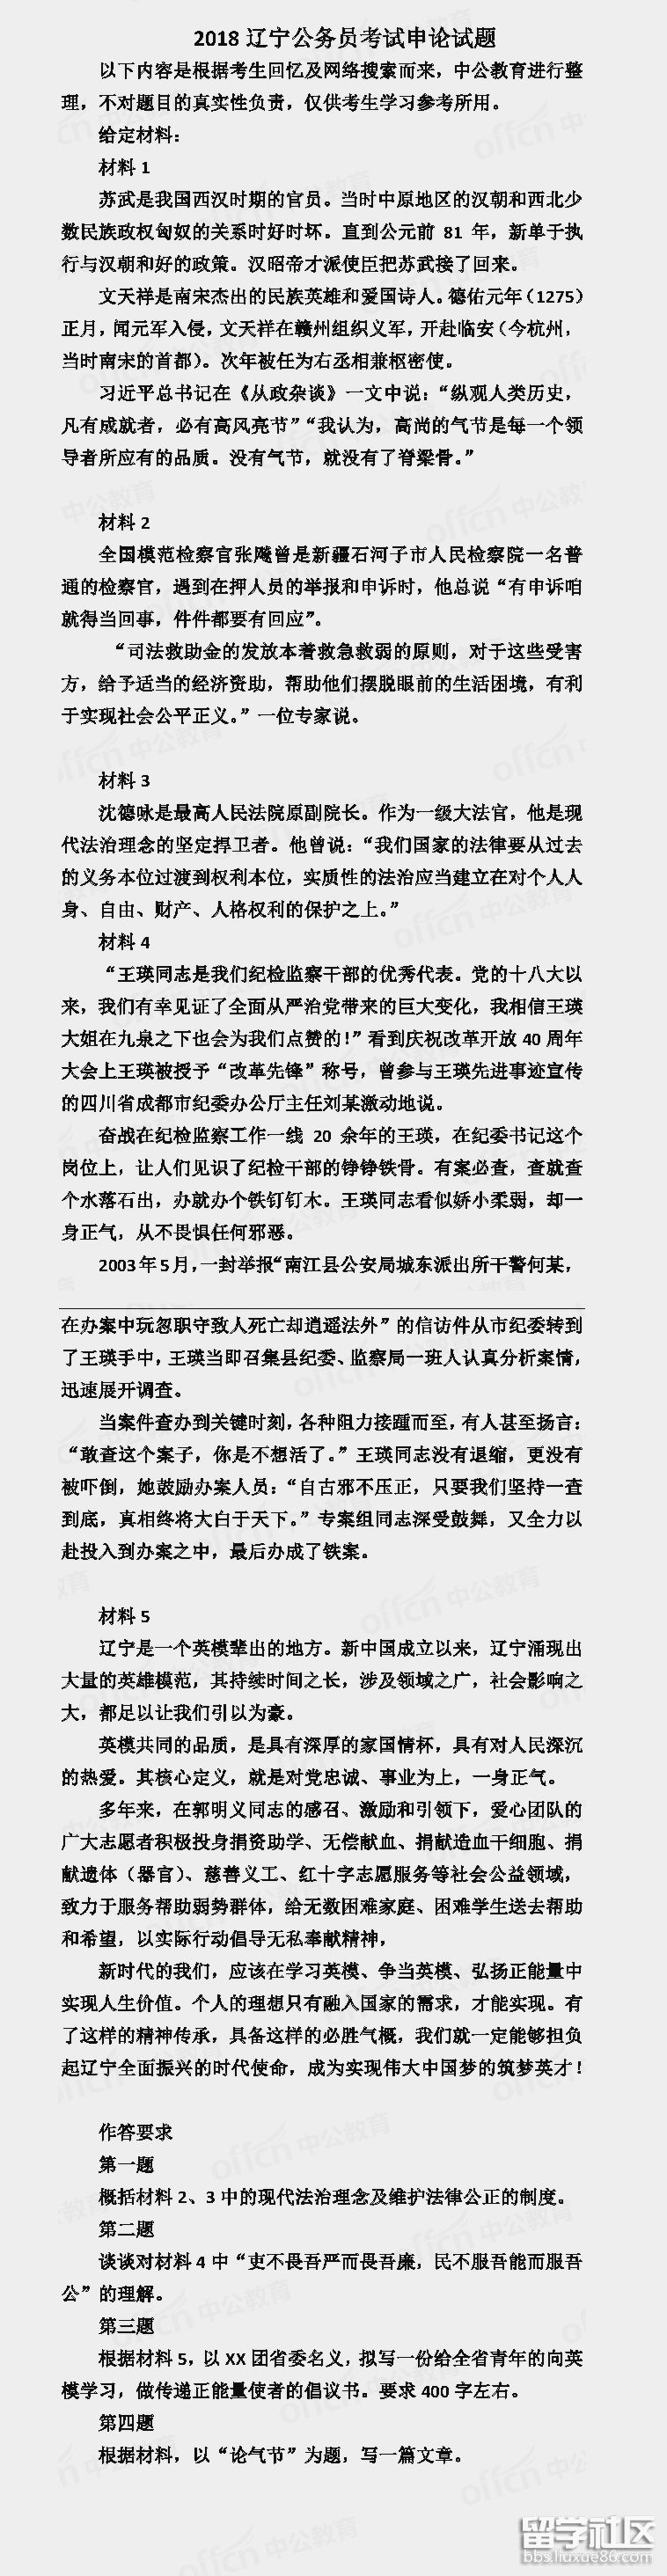 2018遼寧省公務員考試申請真實問題